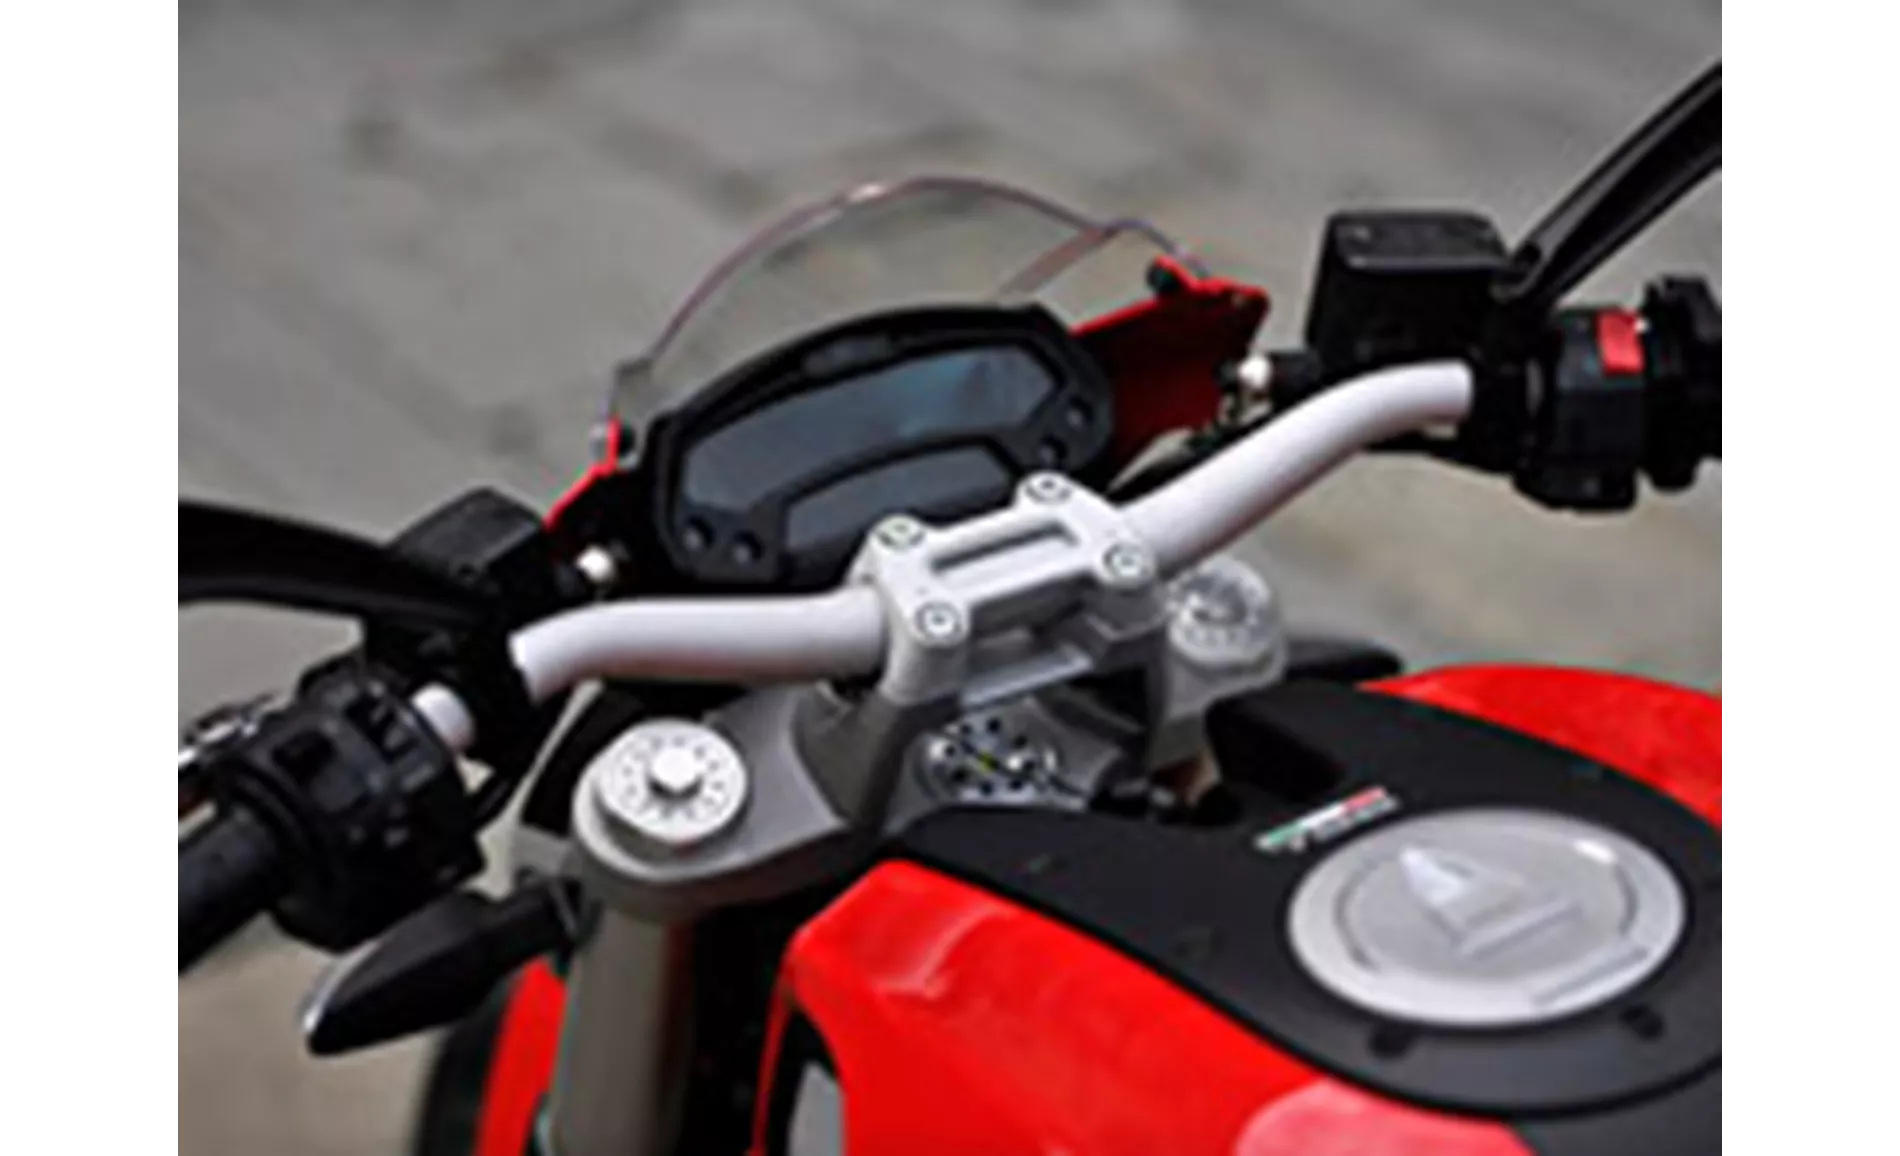 Ducati Monster 796 2012